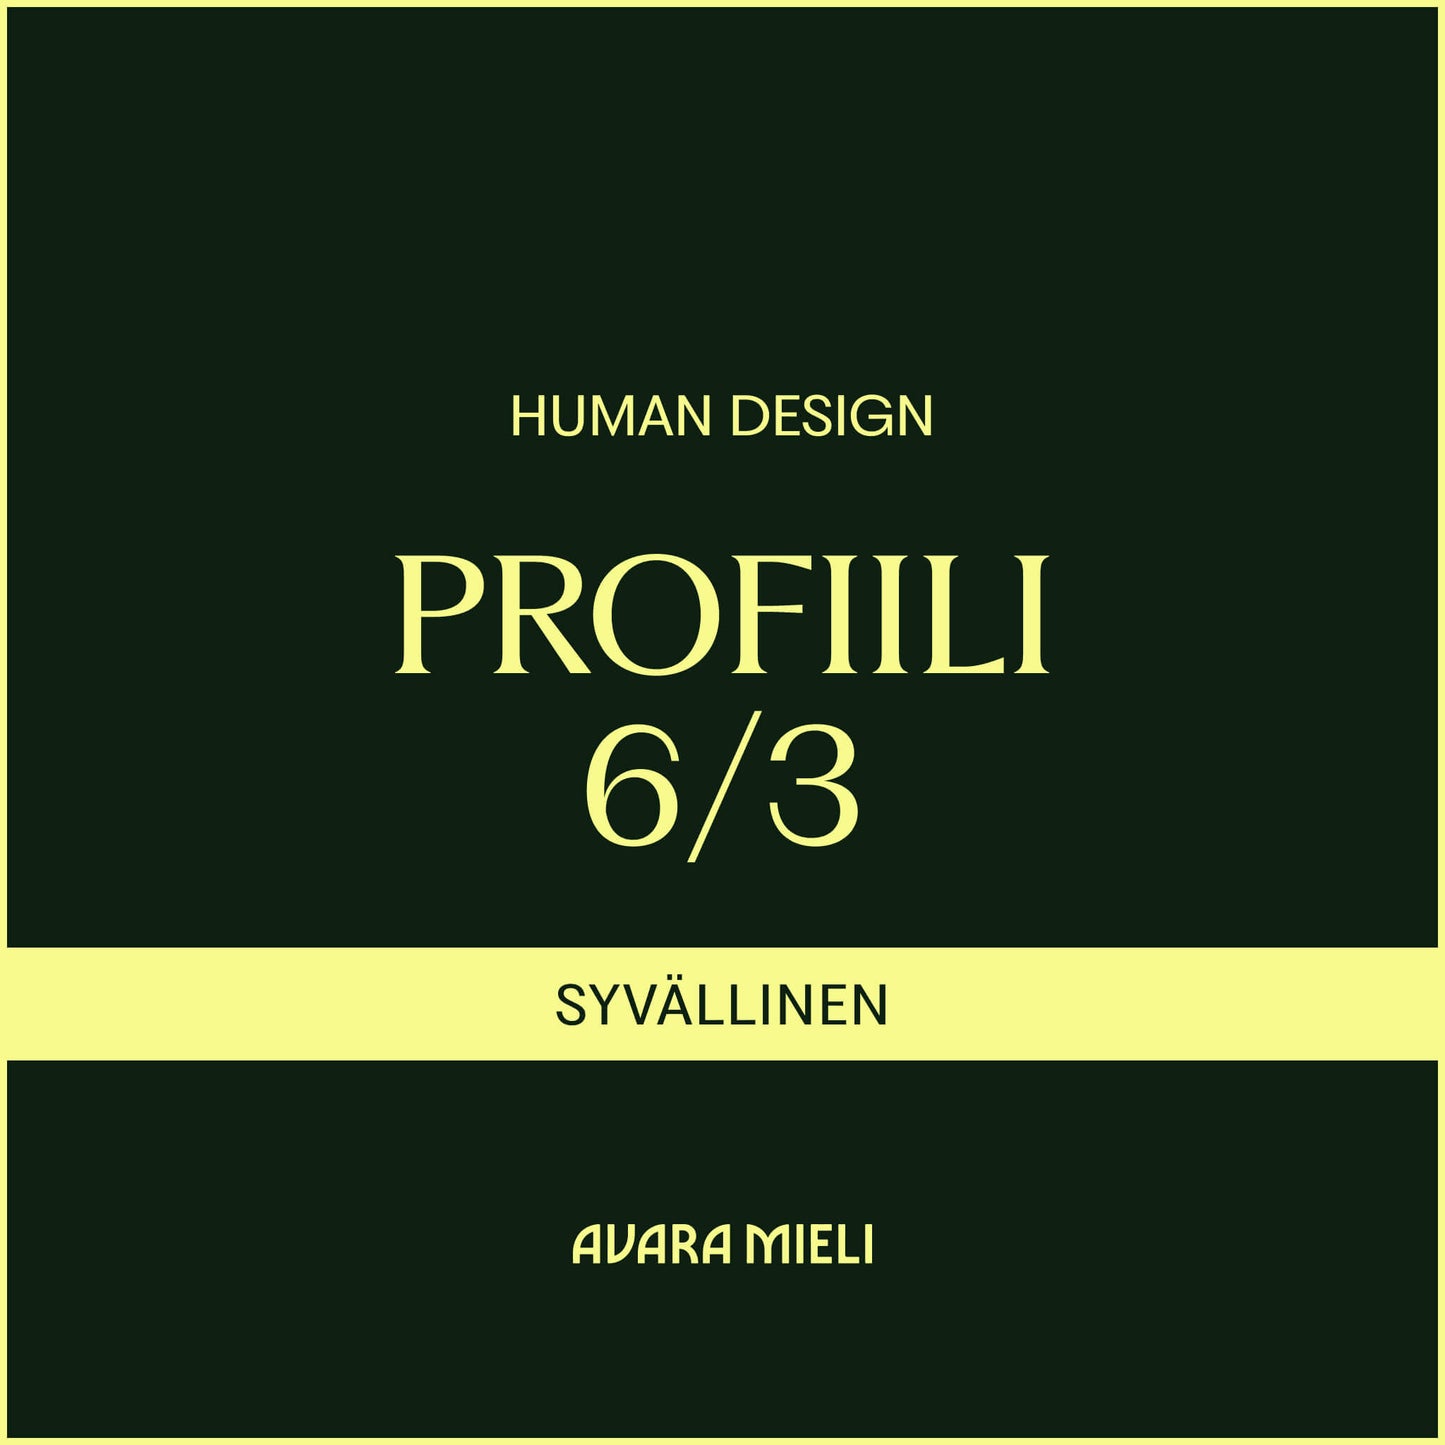 Human Design Profiili 6/3